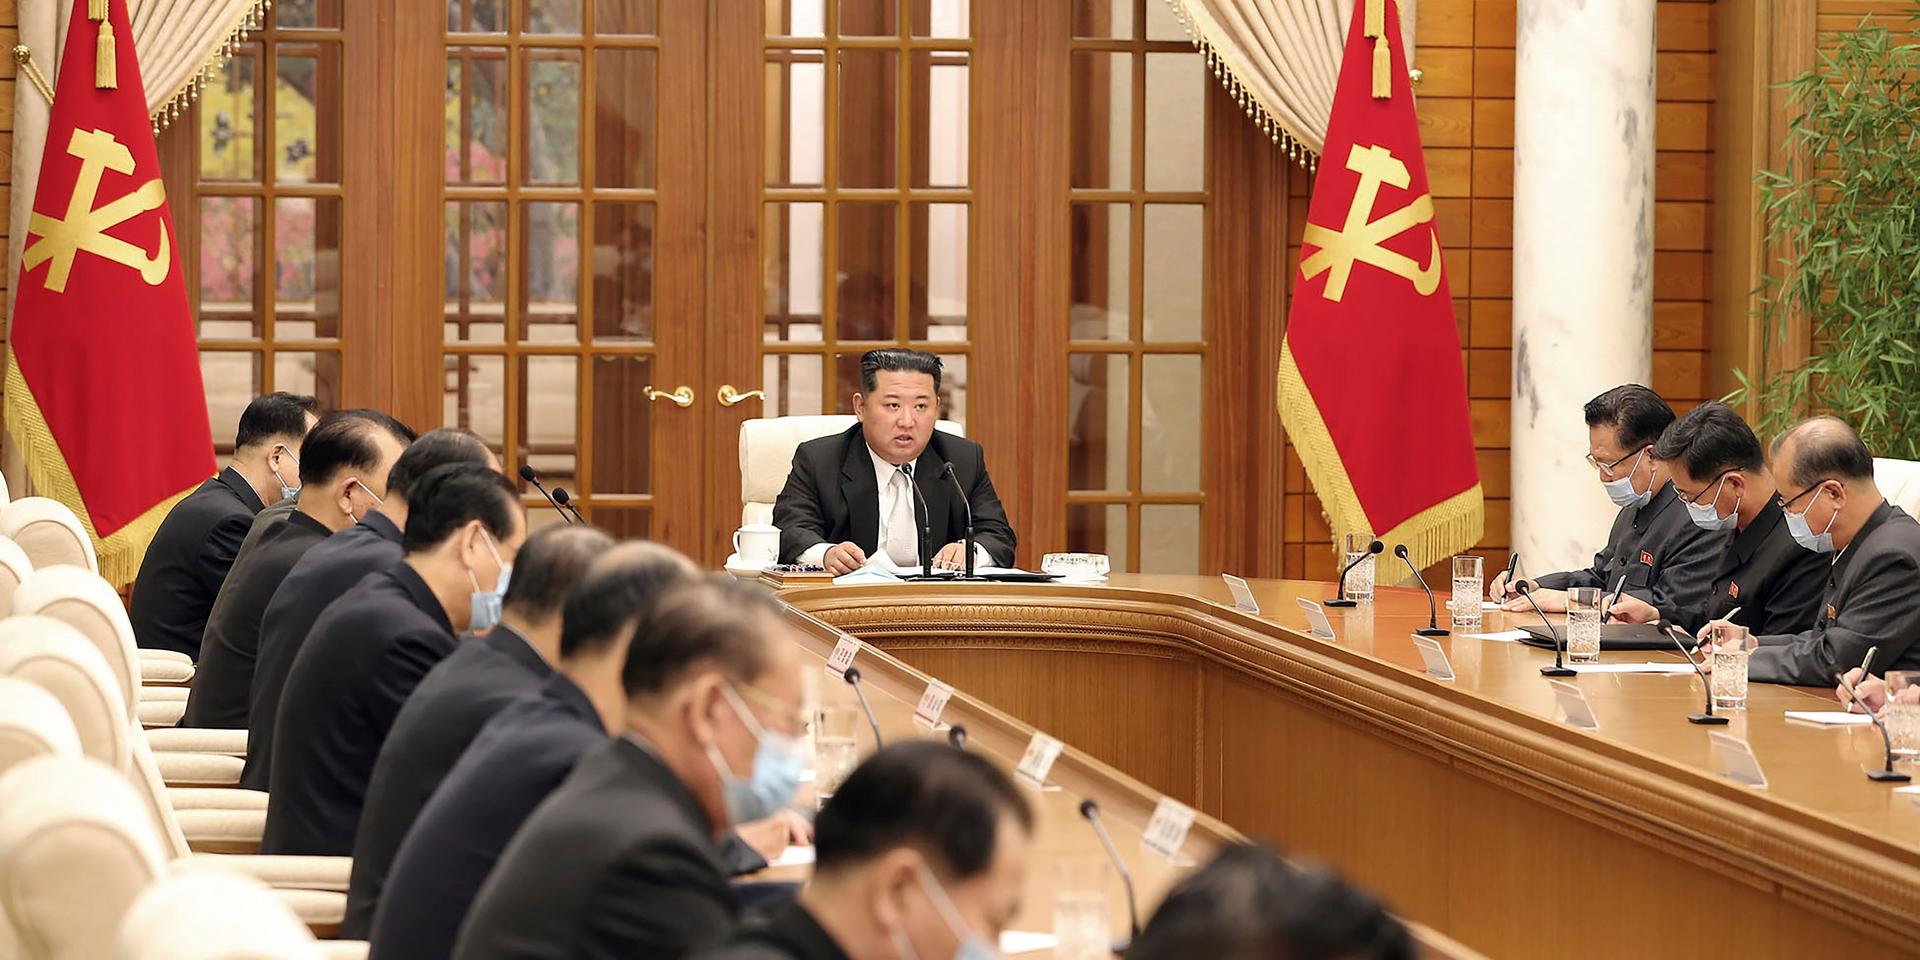 Nordkoreas ledare Kim Jong-Un under ett möte med det styrande kommunistpartiets centralkommitté i torsdags. Bild tillhandahållen av Nordkoreas kommunistparti.